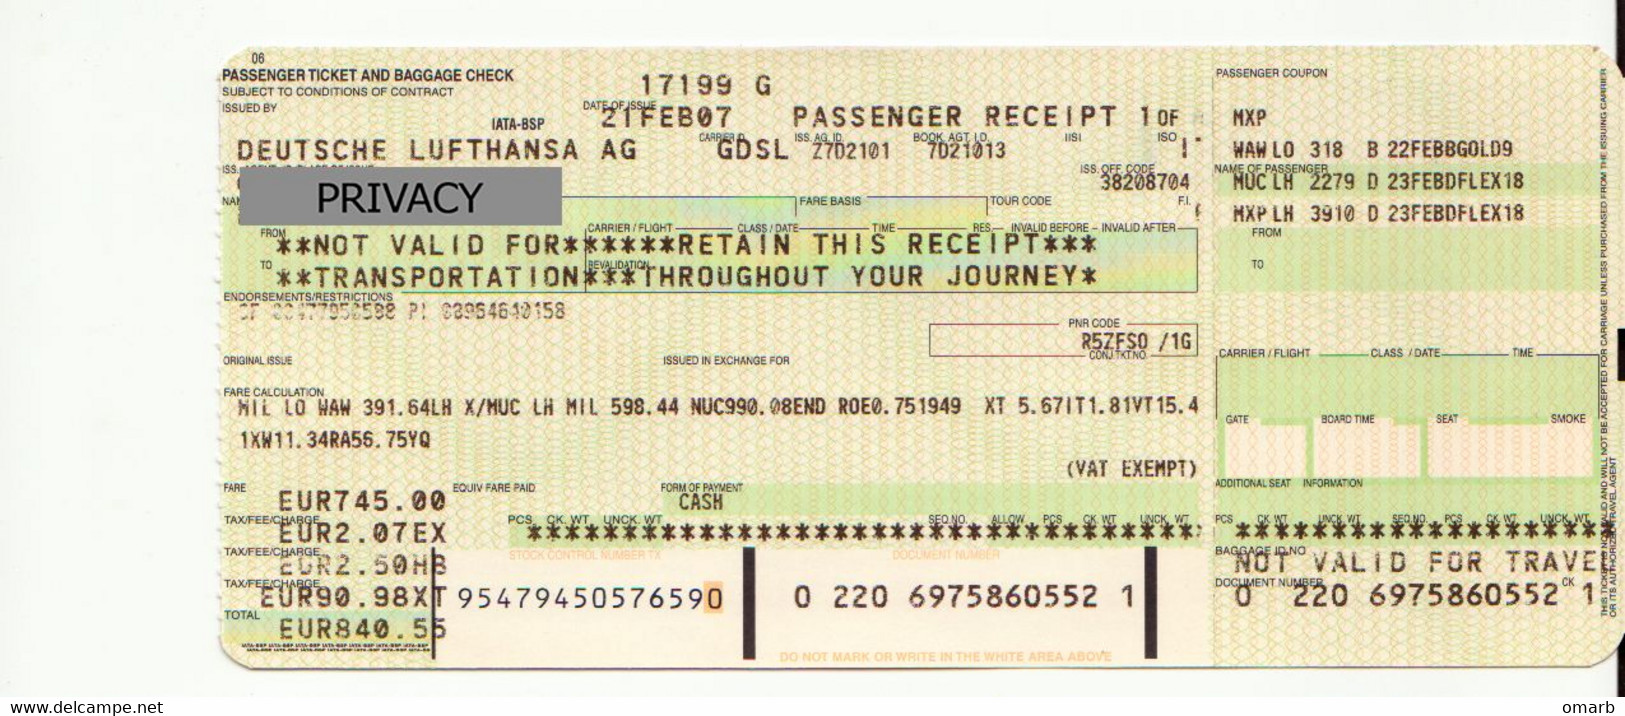 Alt1118 Lufthansa Airways Billets Avion Ticket Biglietto Aereo Passenger Receipt Imbarco Milano Munich Warsaw Airport - Europe